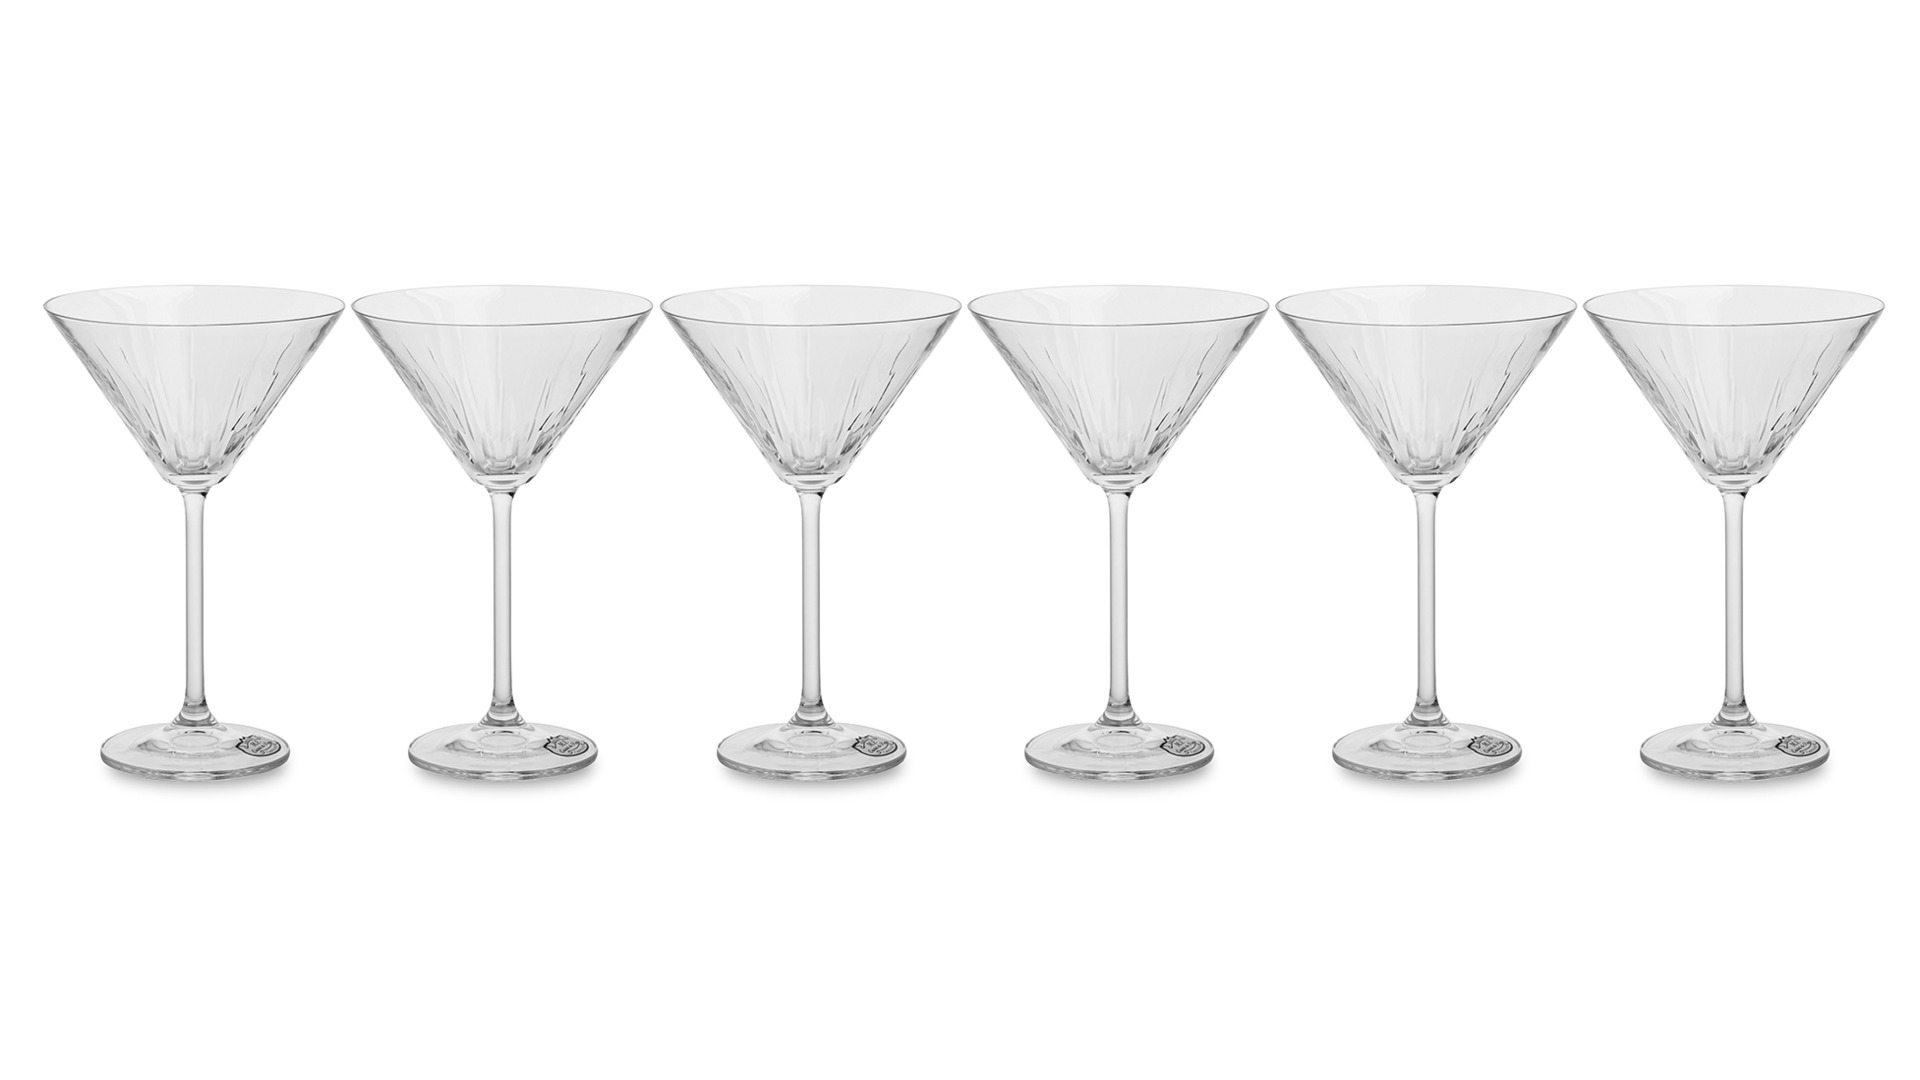 Набор бокалов для коктейля Cristal de Paris Люксор 280 мл, 6 шт